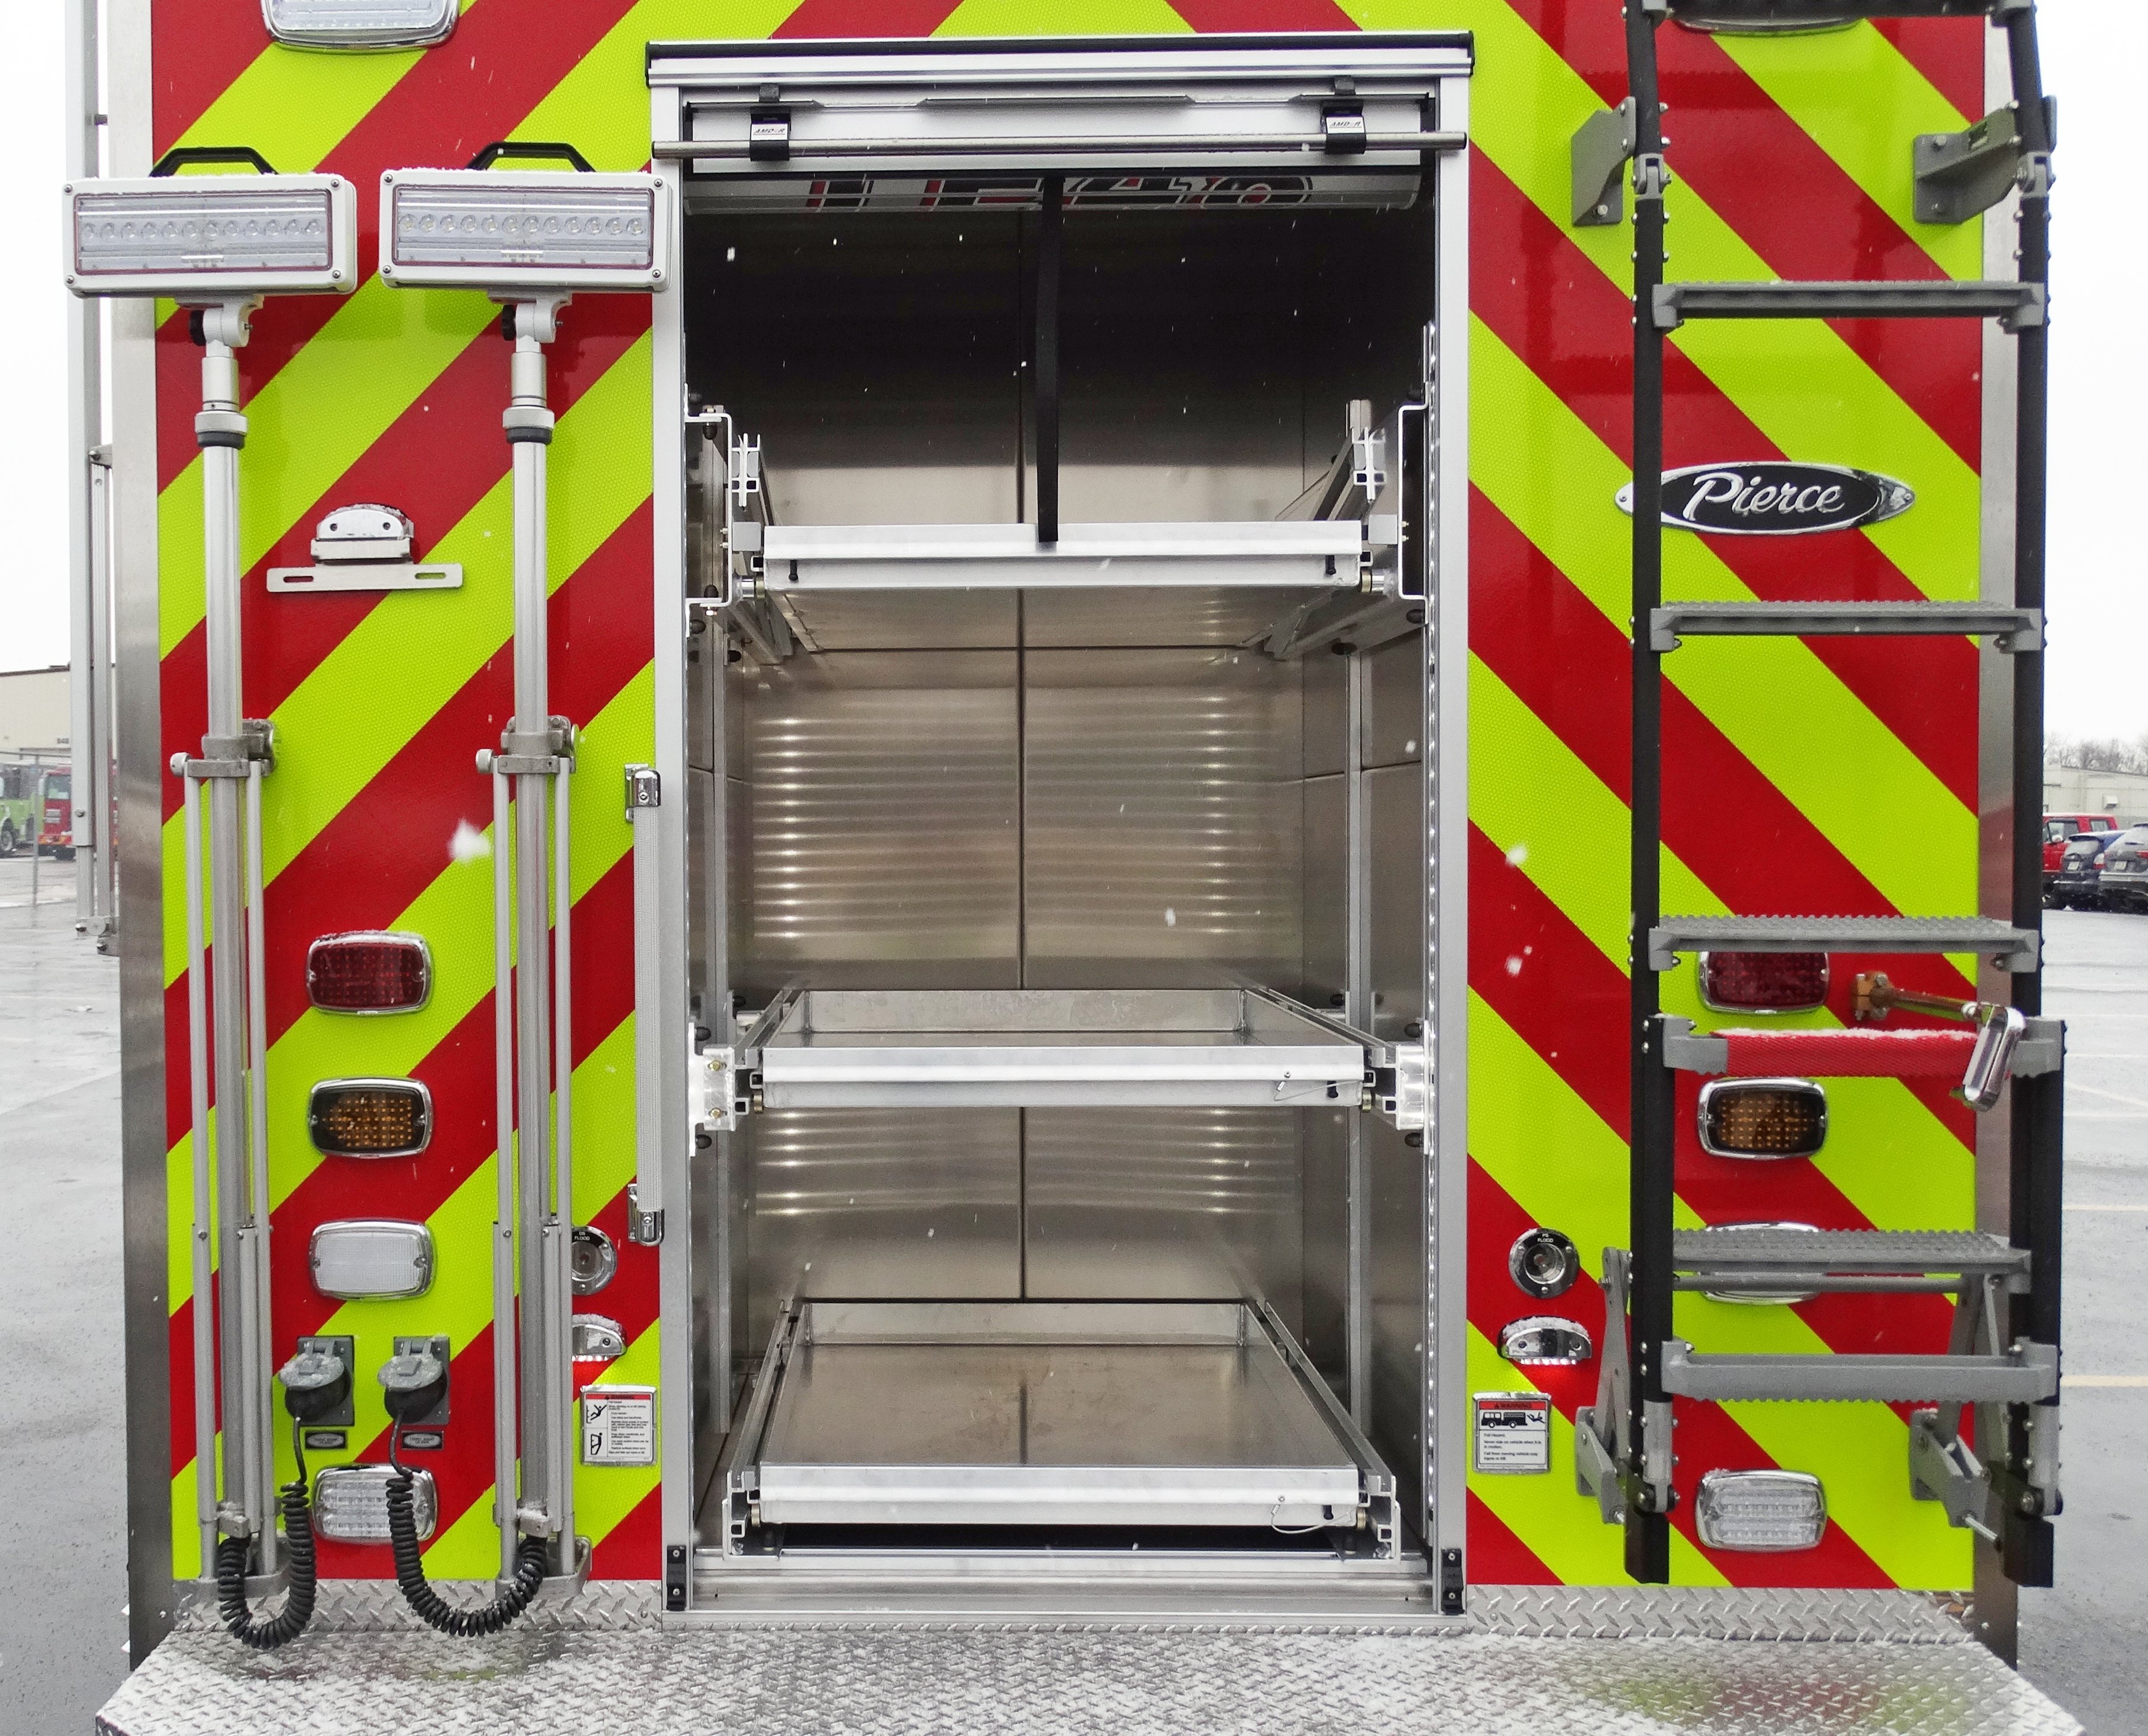 Pierce ENCORE Rescue Fire Truck Rear Compartment